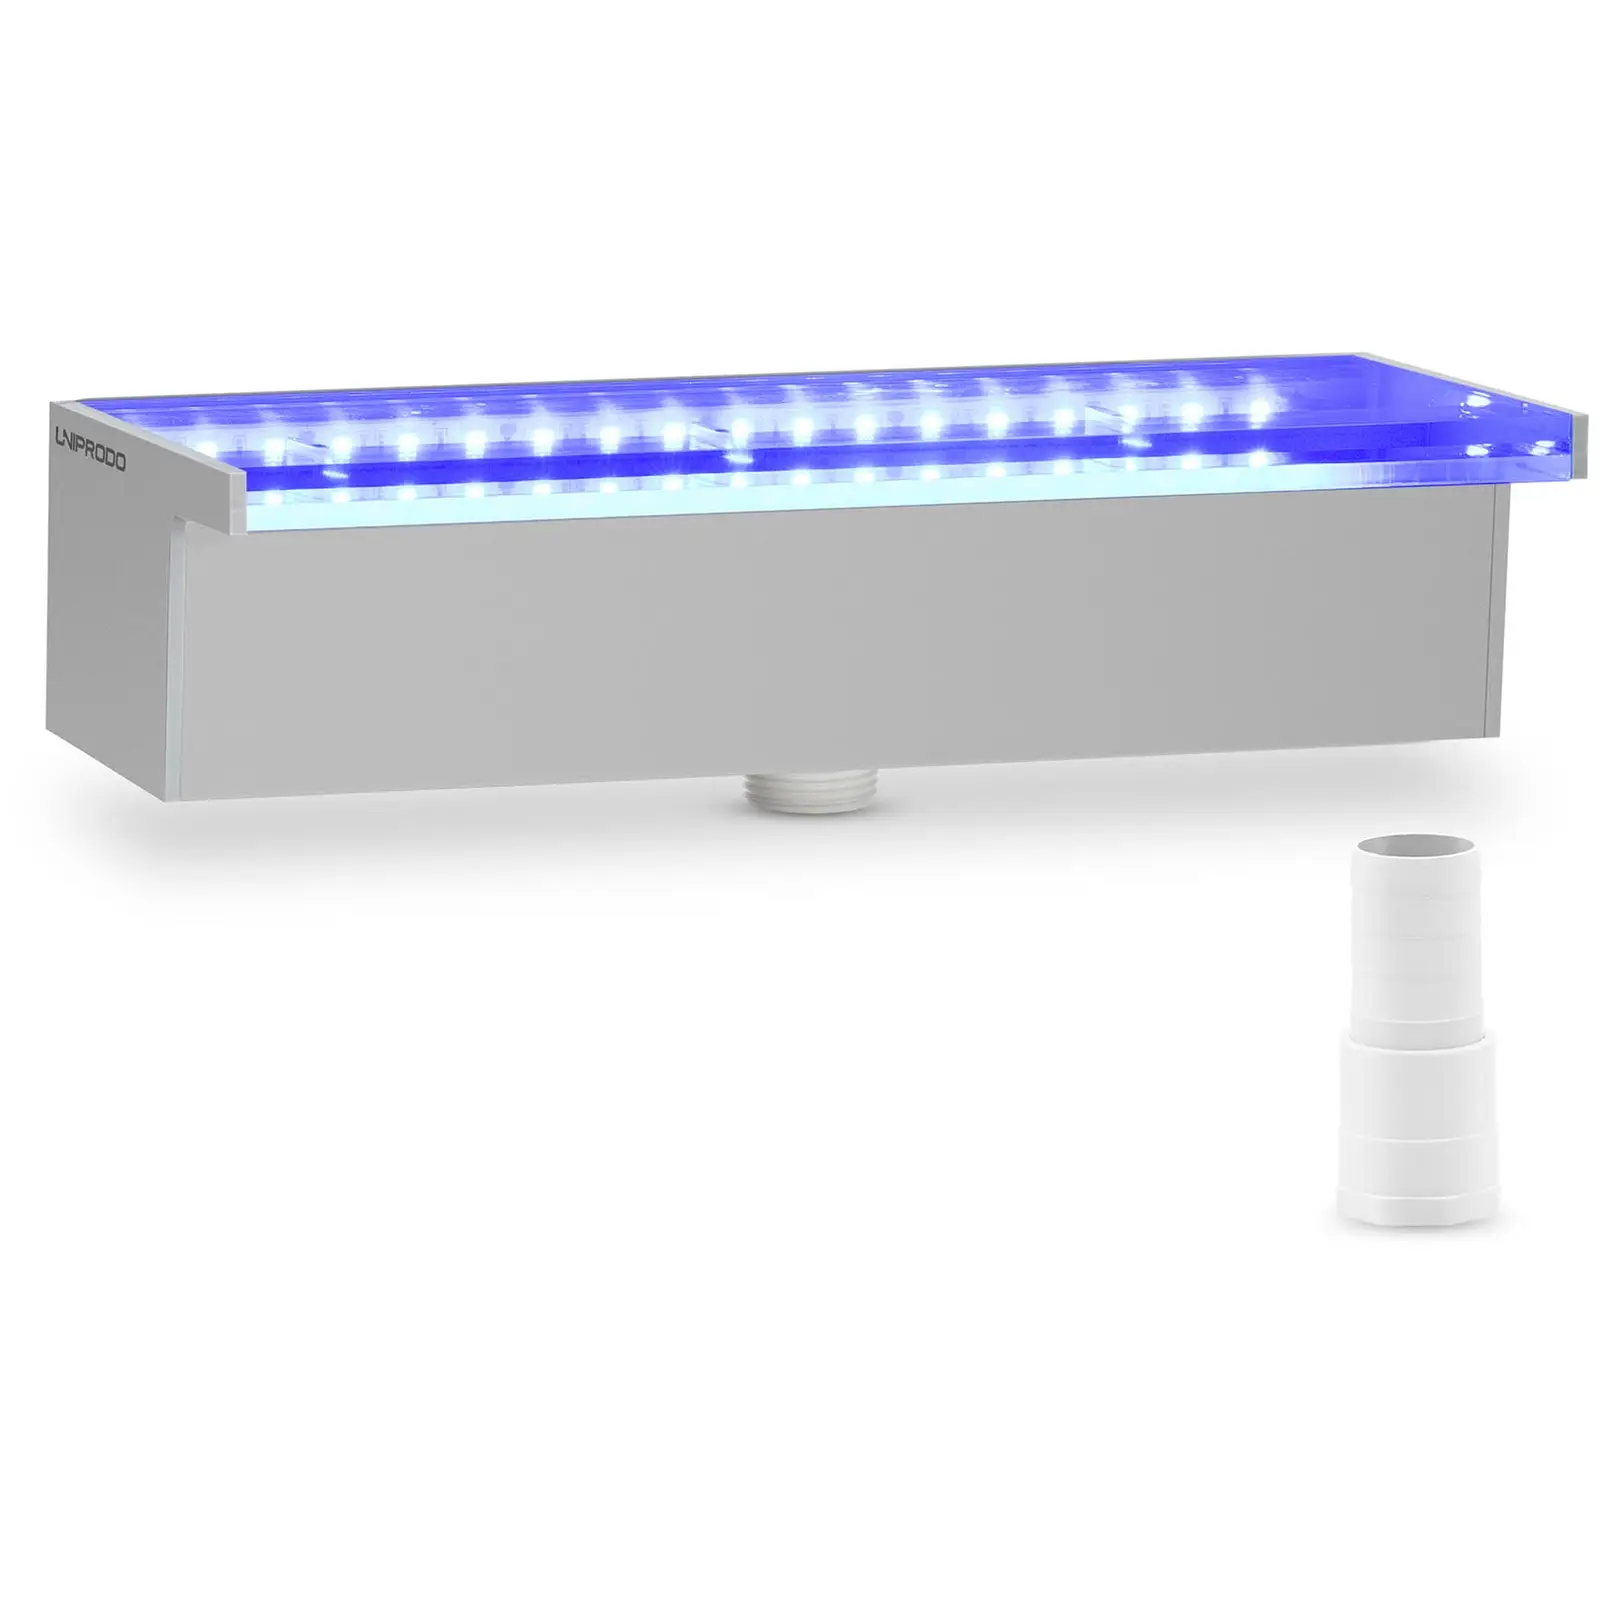 Chrlič vody - 30 cm - LED osvětlení - modrá/bílá barva - nízký vývod vody